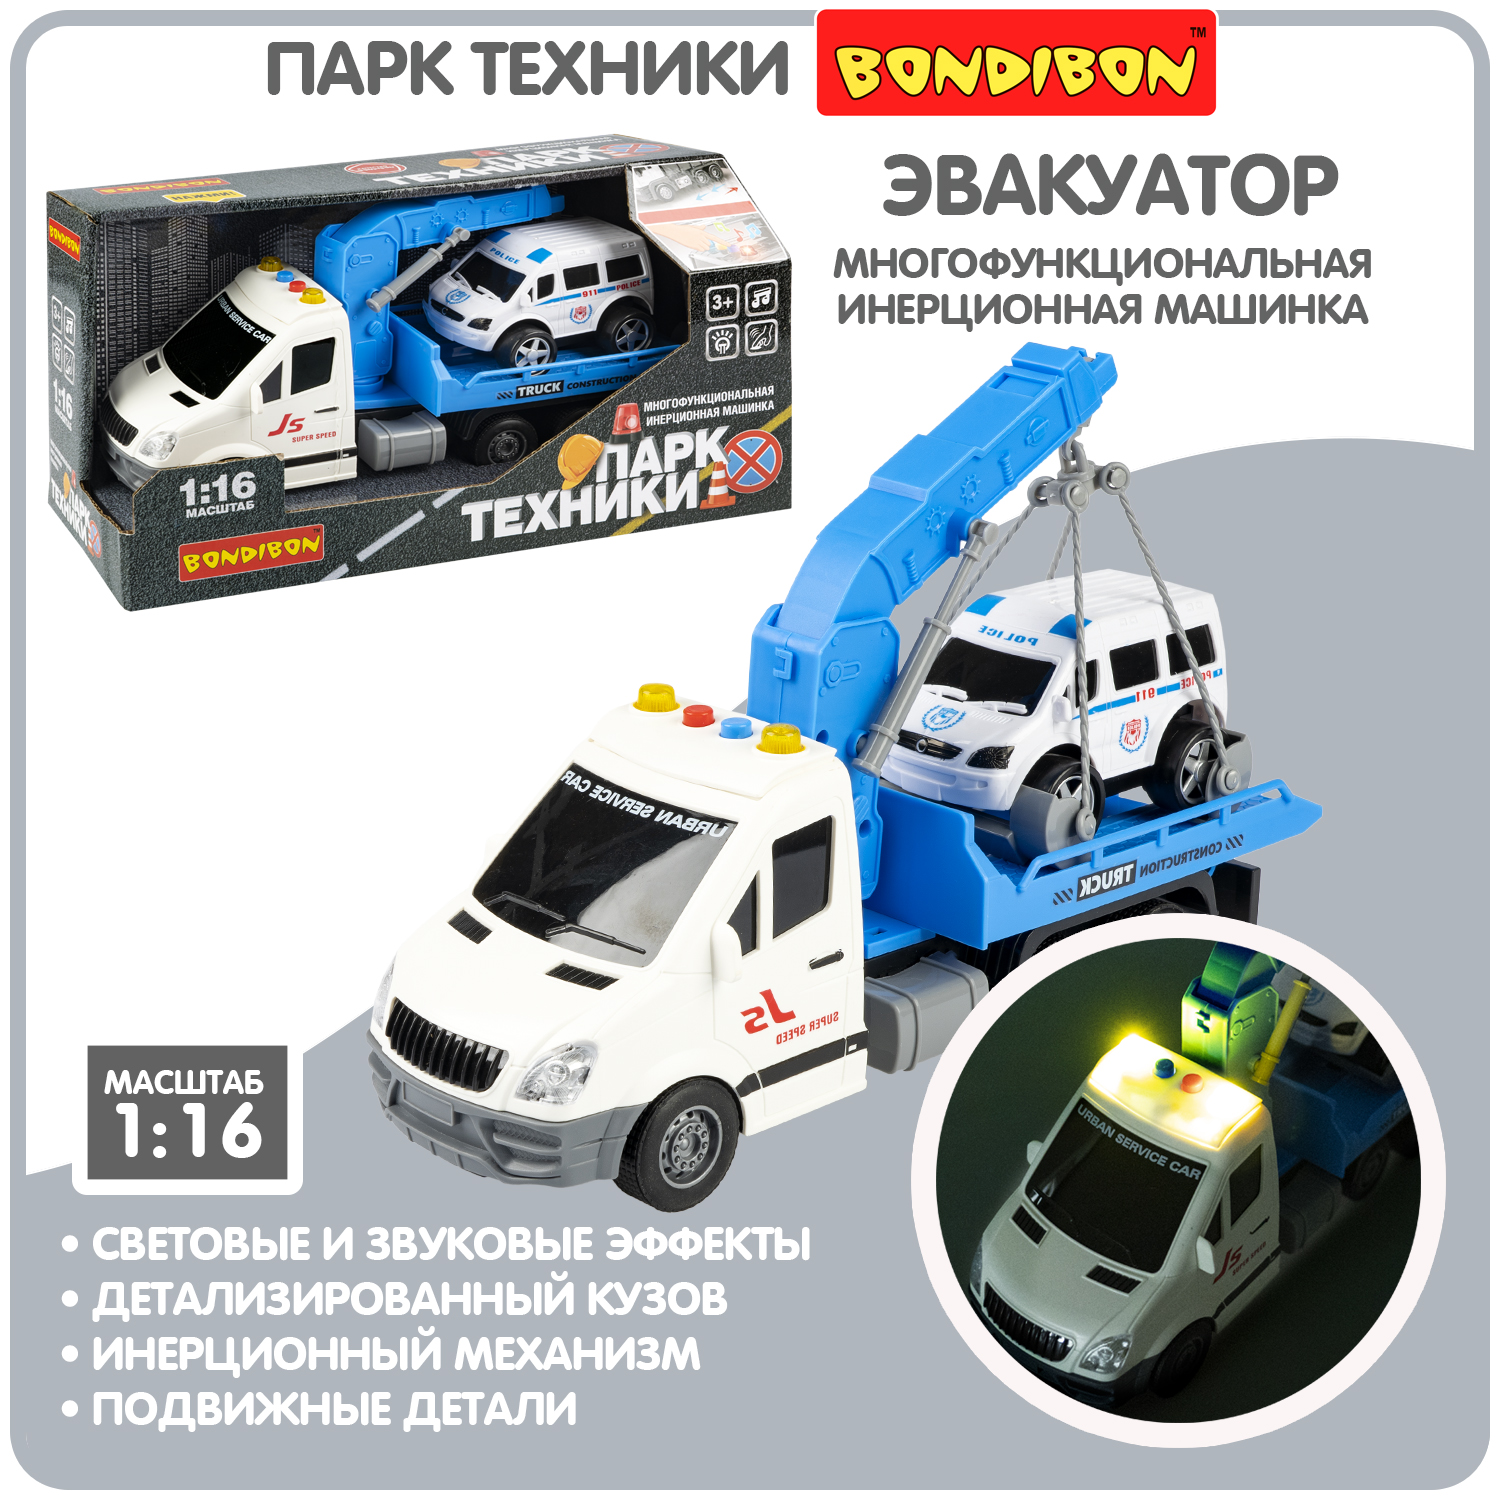 Многофункциональная инерционная машинка Bondibon «ПАРК ТЕХНИКИ», синий эвакуатор, BOX